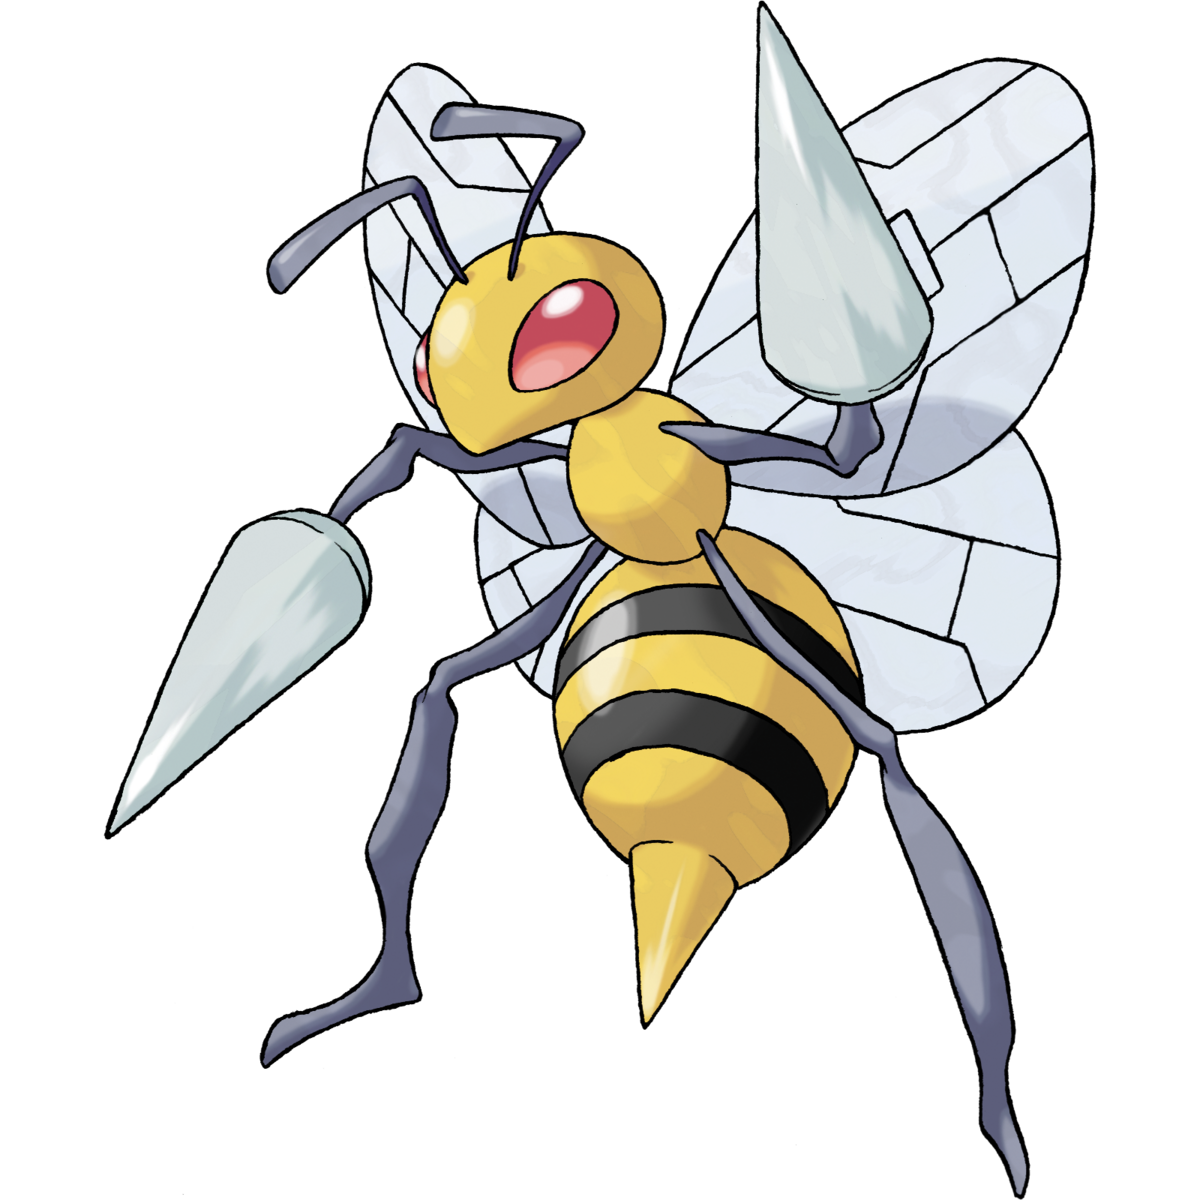 Beedrill (Pokémon) - Bulbapedia, the community-driven Pokémon encyclopedia